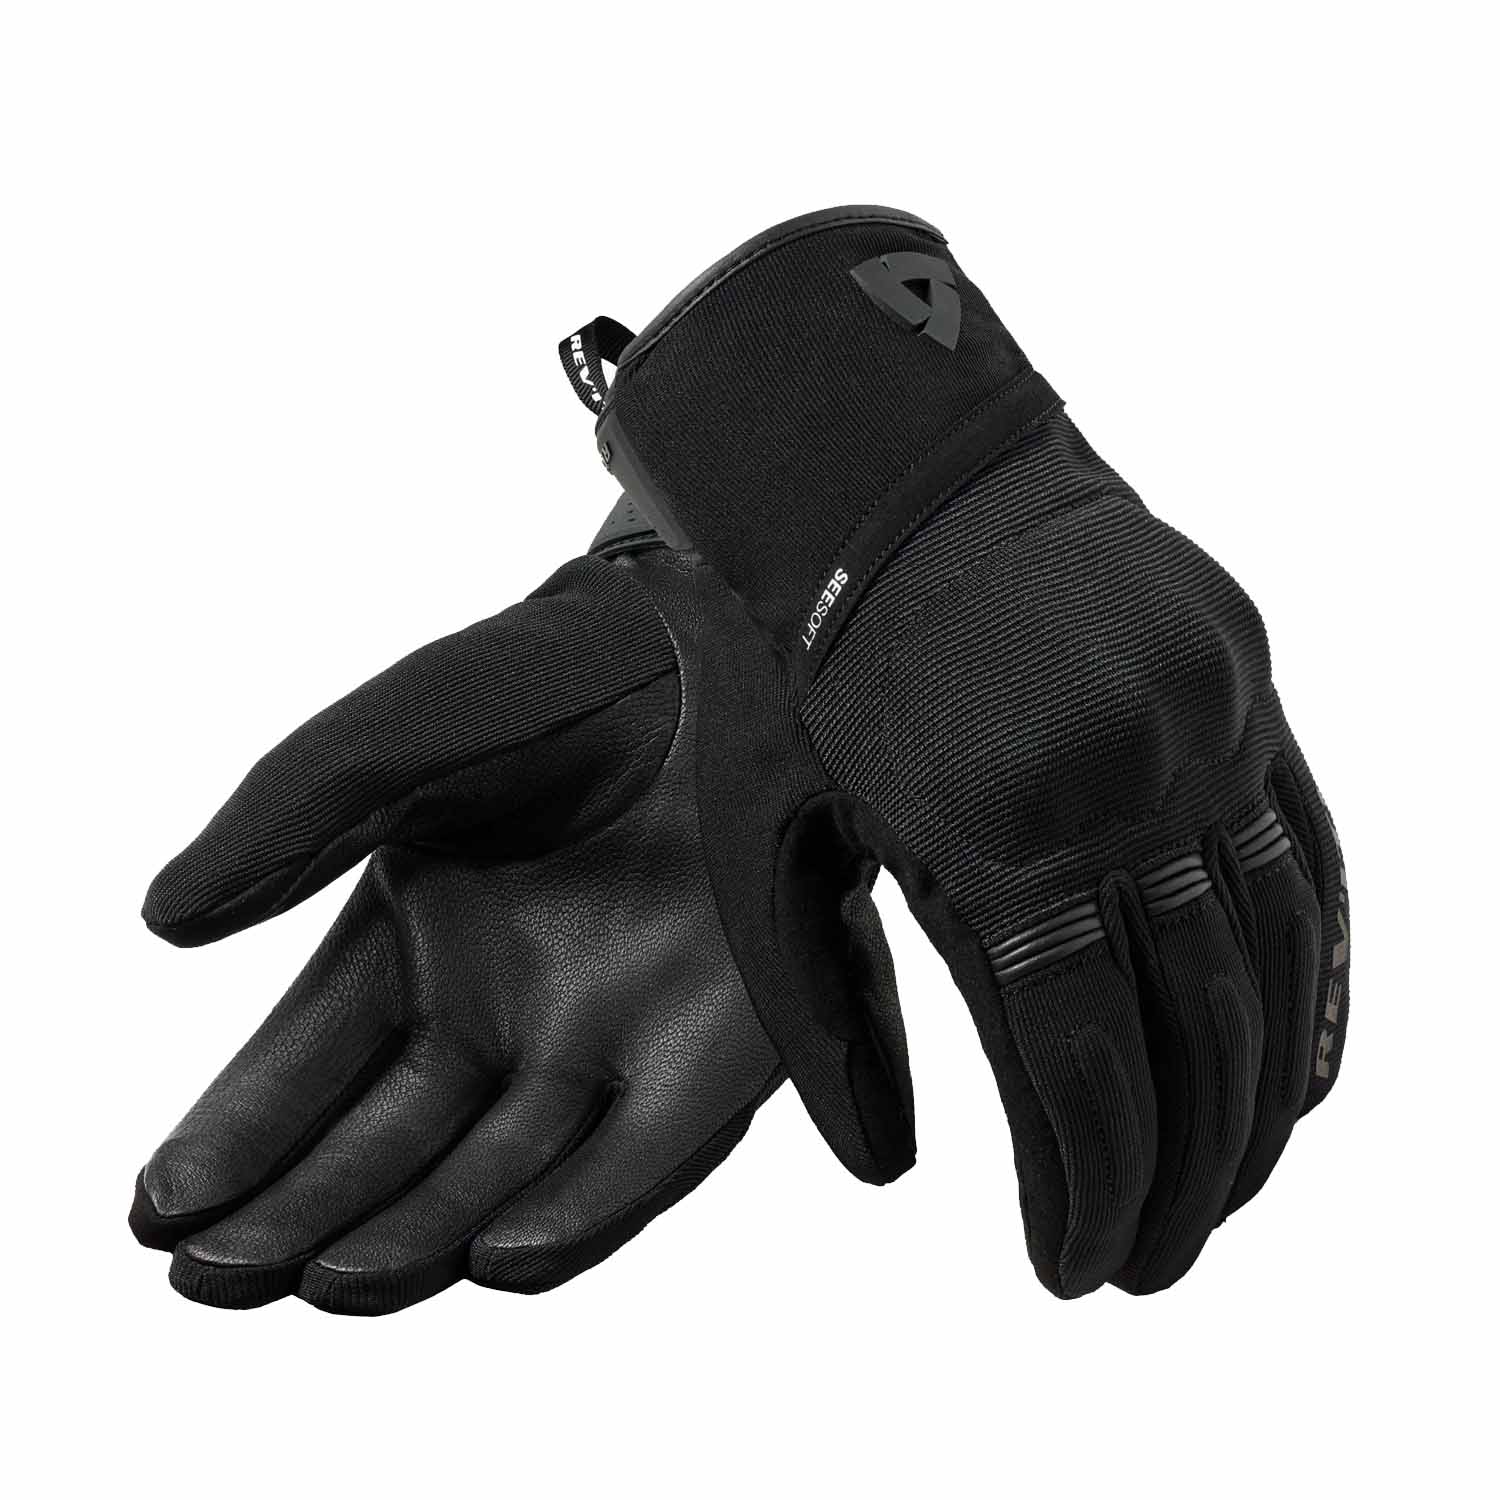 Image of REV'IT! Mosca 2 H2O Gloves Black Size 4XL EN